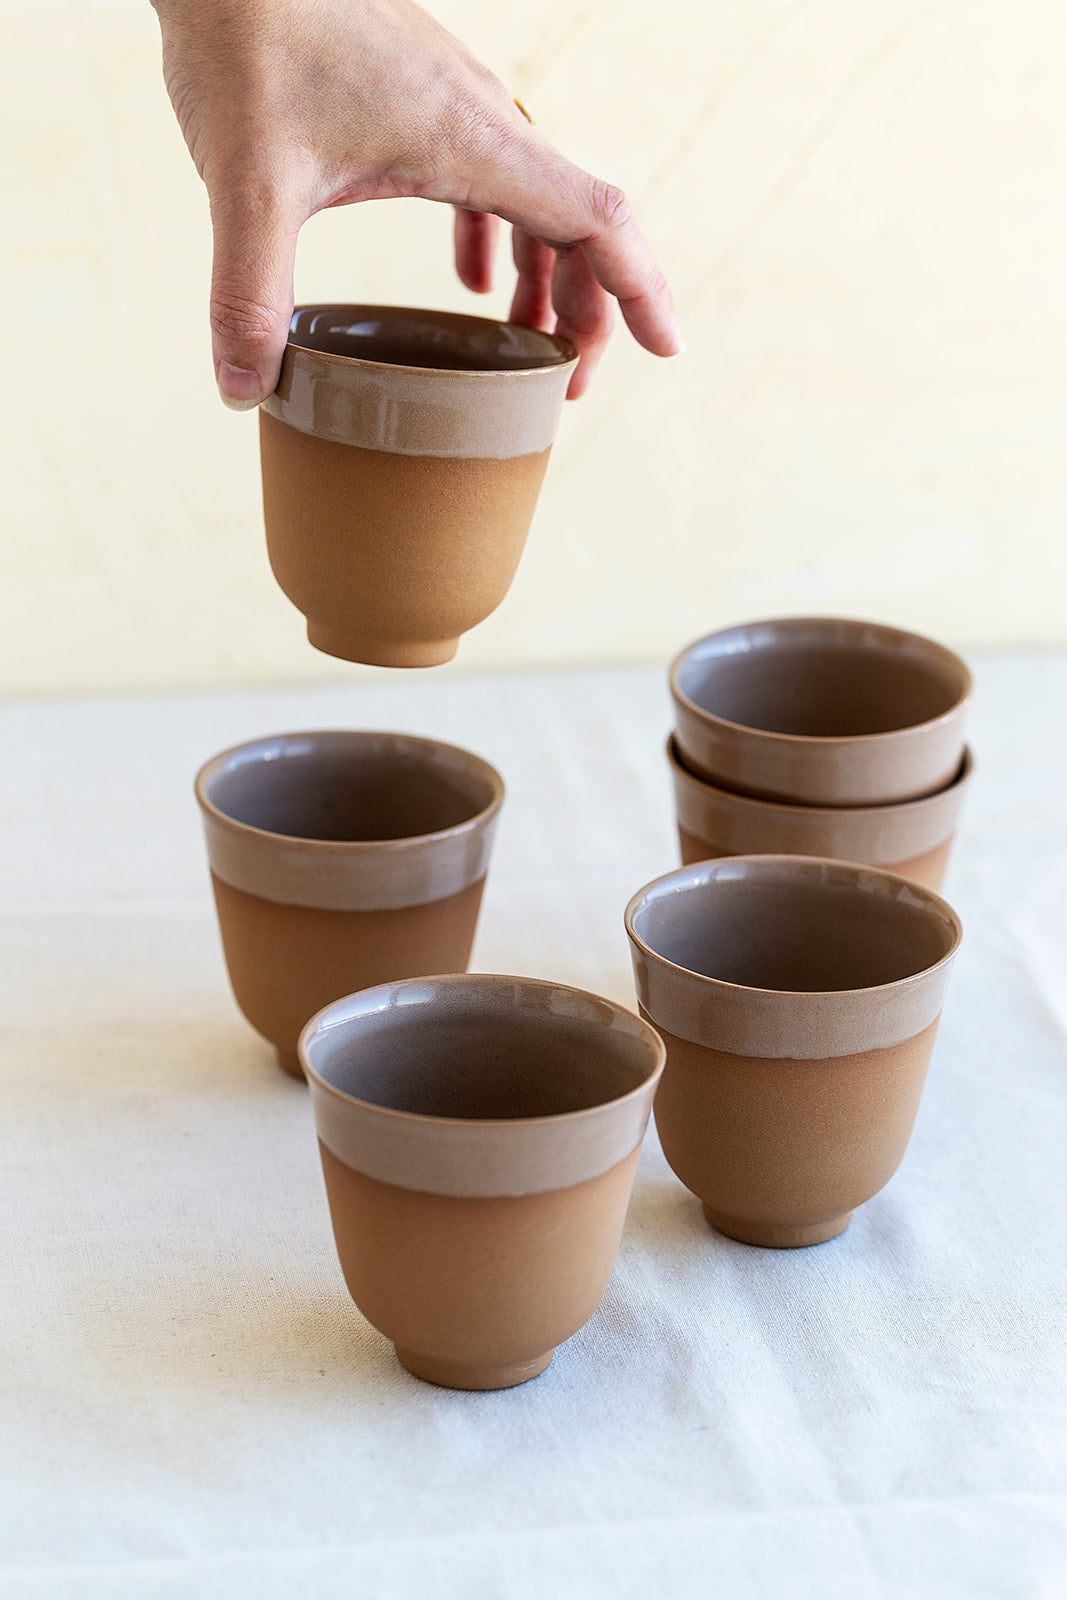 Ceramic cup - Terra Cotta cup